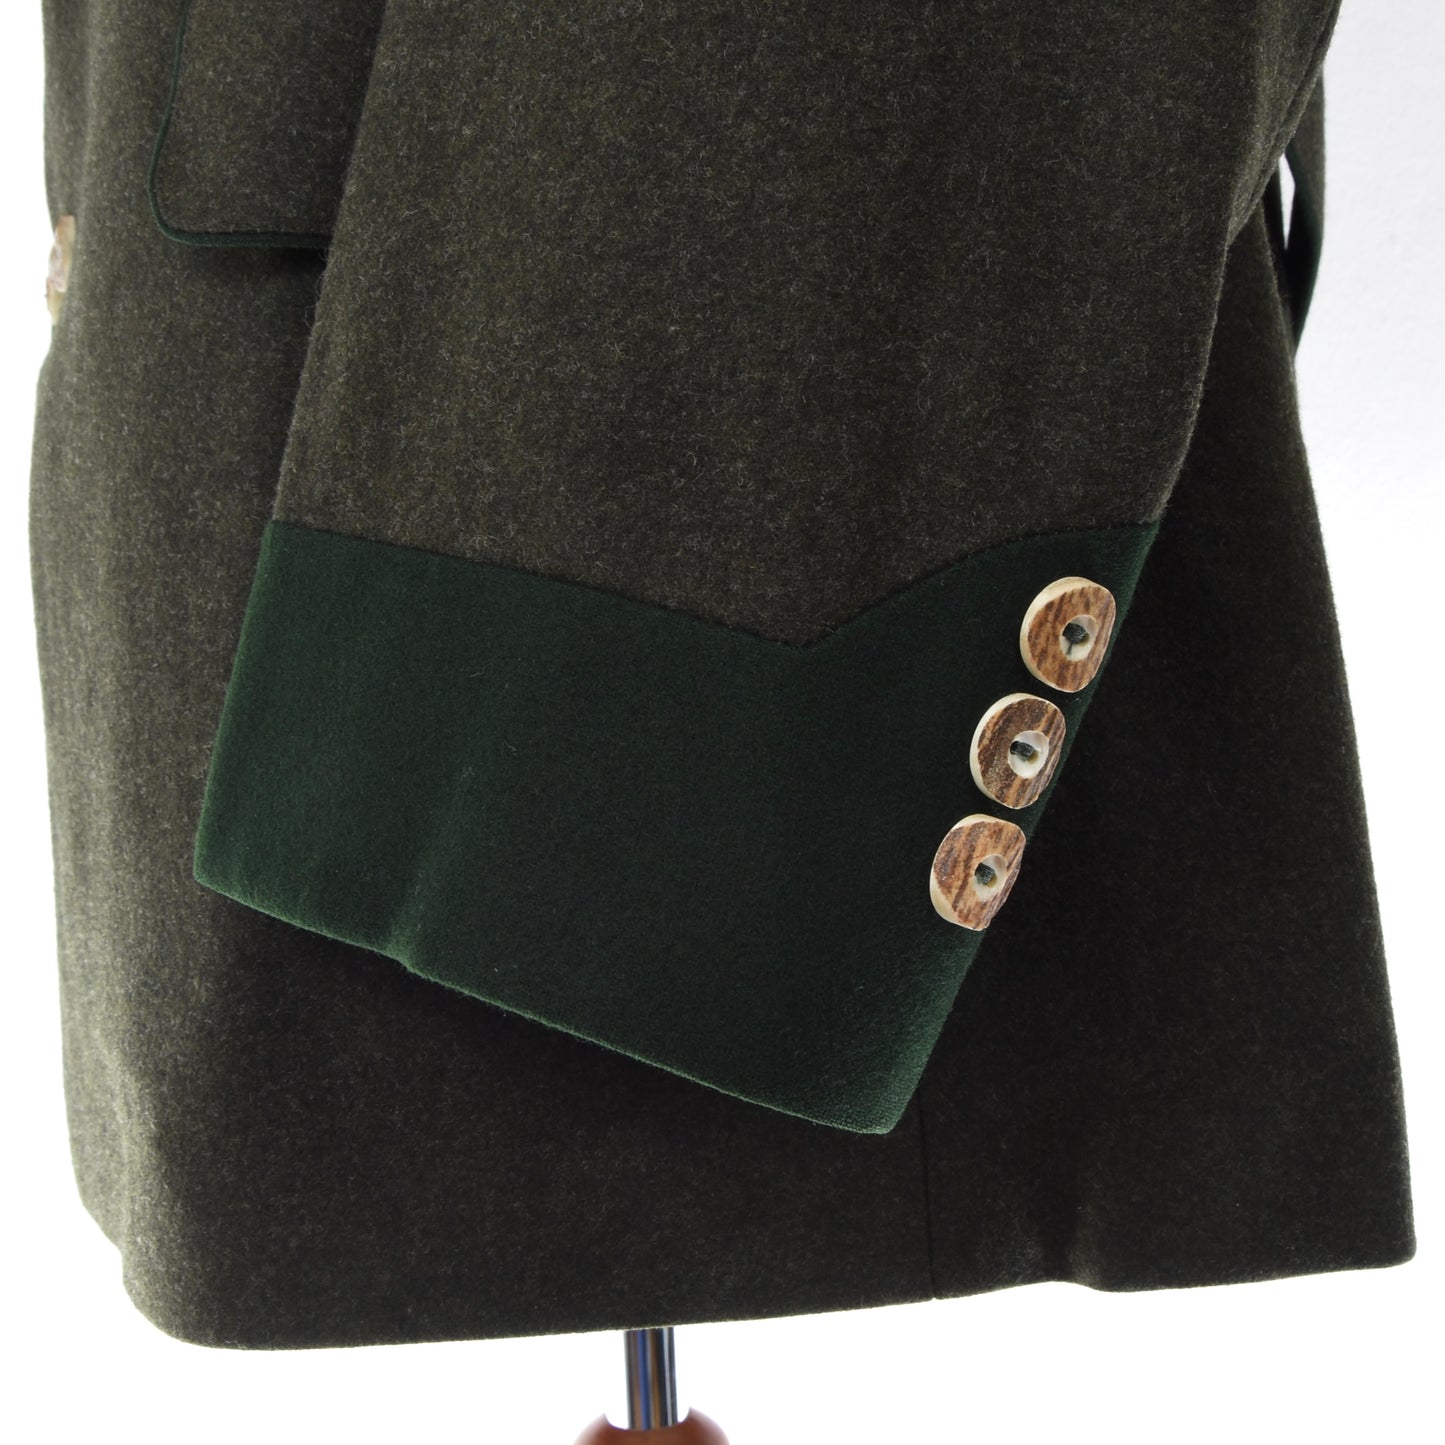 Loden Fürst Wool Janker/Jacket ca. 67cm - Green